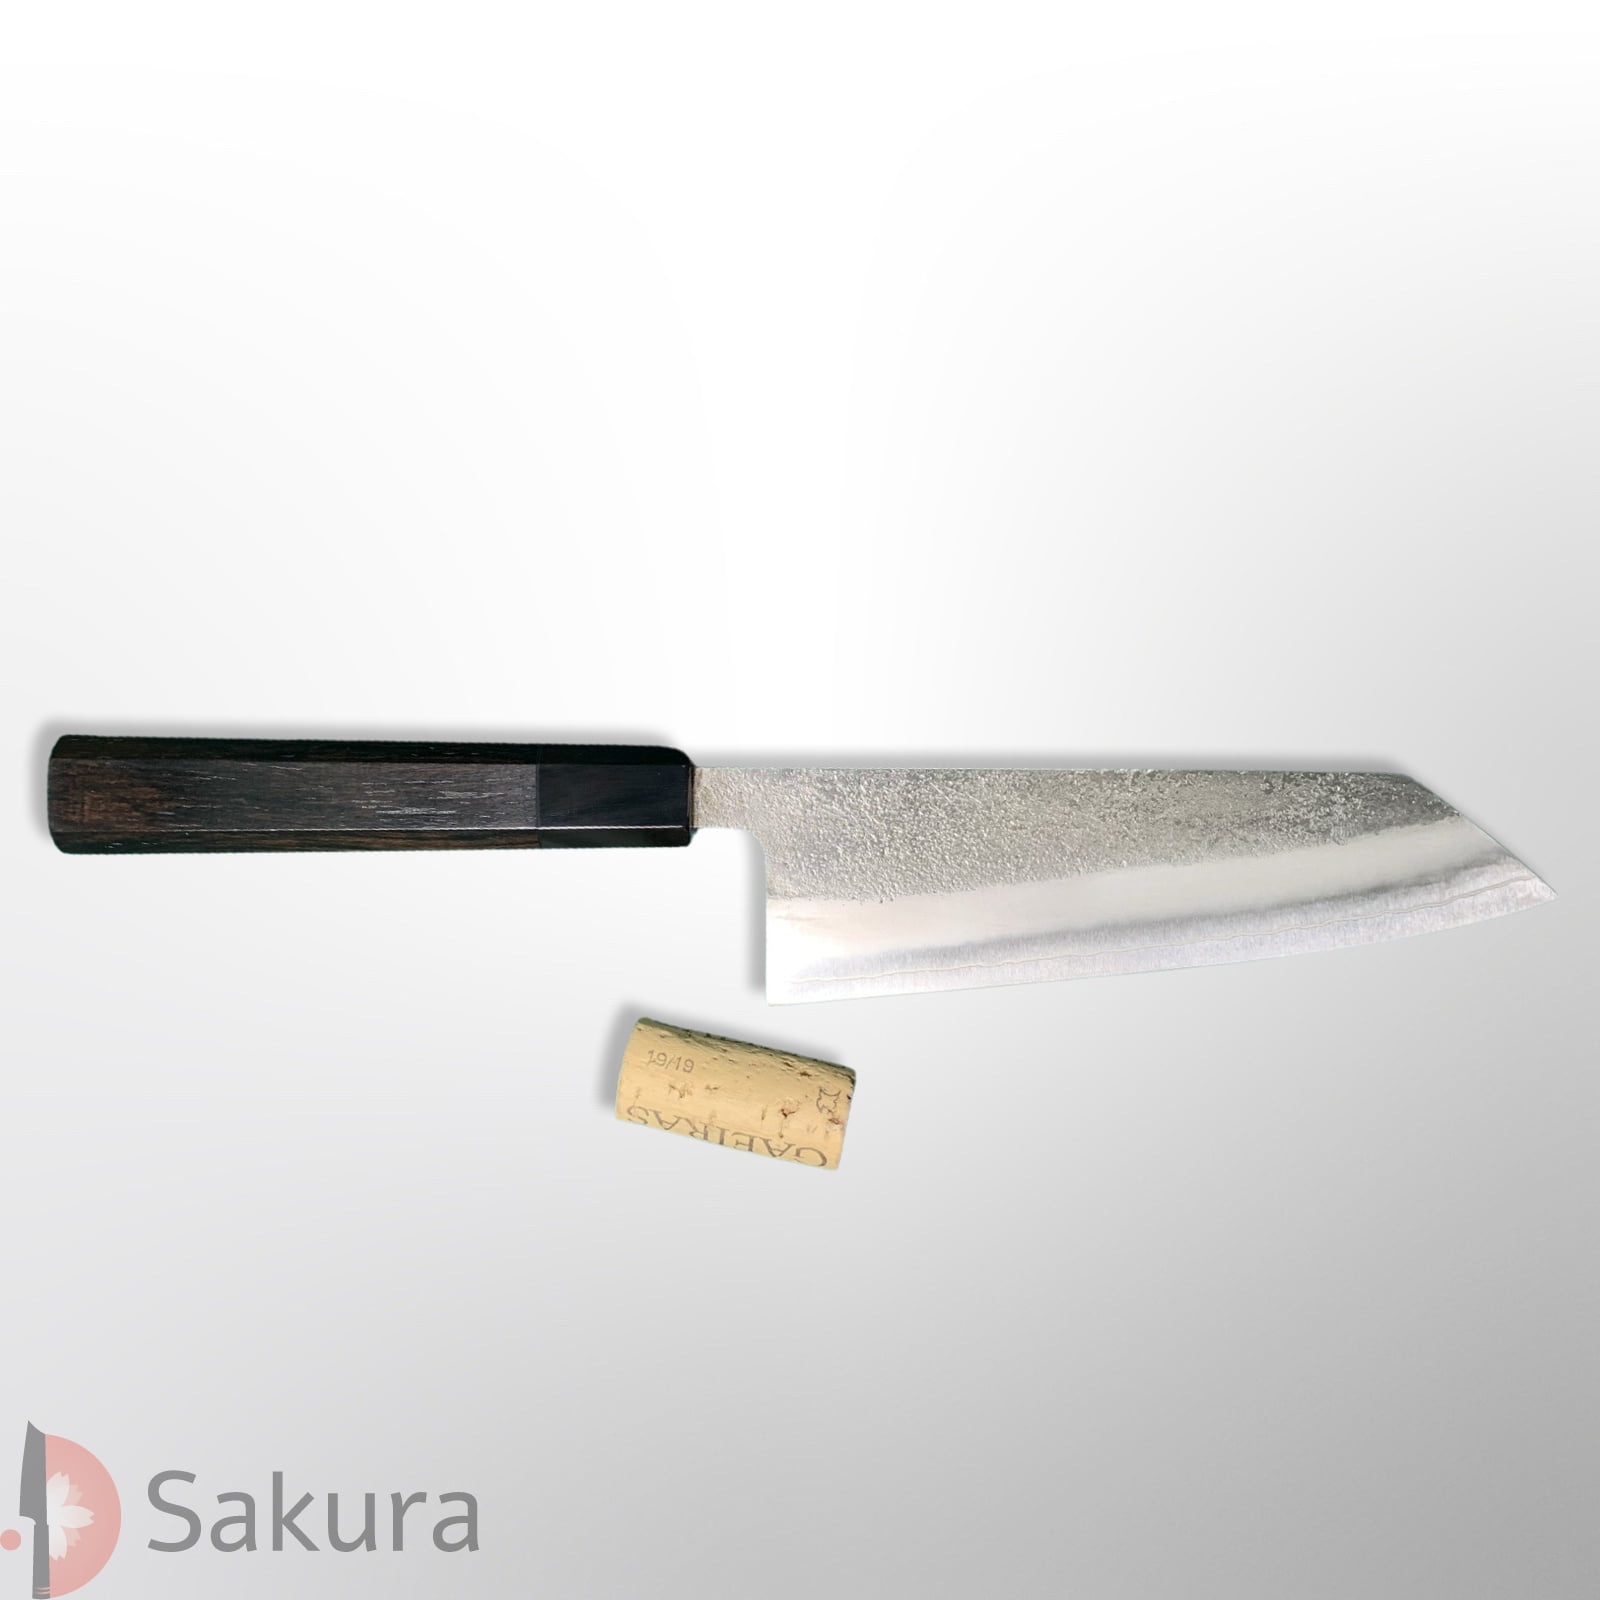 סכין רב-תכליתית בּוּנְקָה 165מ״מ מחושלת בעבודת יד 3 שכבות: פלדת פחמן יפנית מתקדמת מסוג SKD  פלדת אל-חלד גימור אל-חלד קורואוצ׳י מט חיספוס טבעי יושיקאנה יפן – SKYOSHSKDBUNK16524